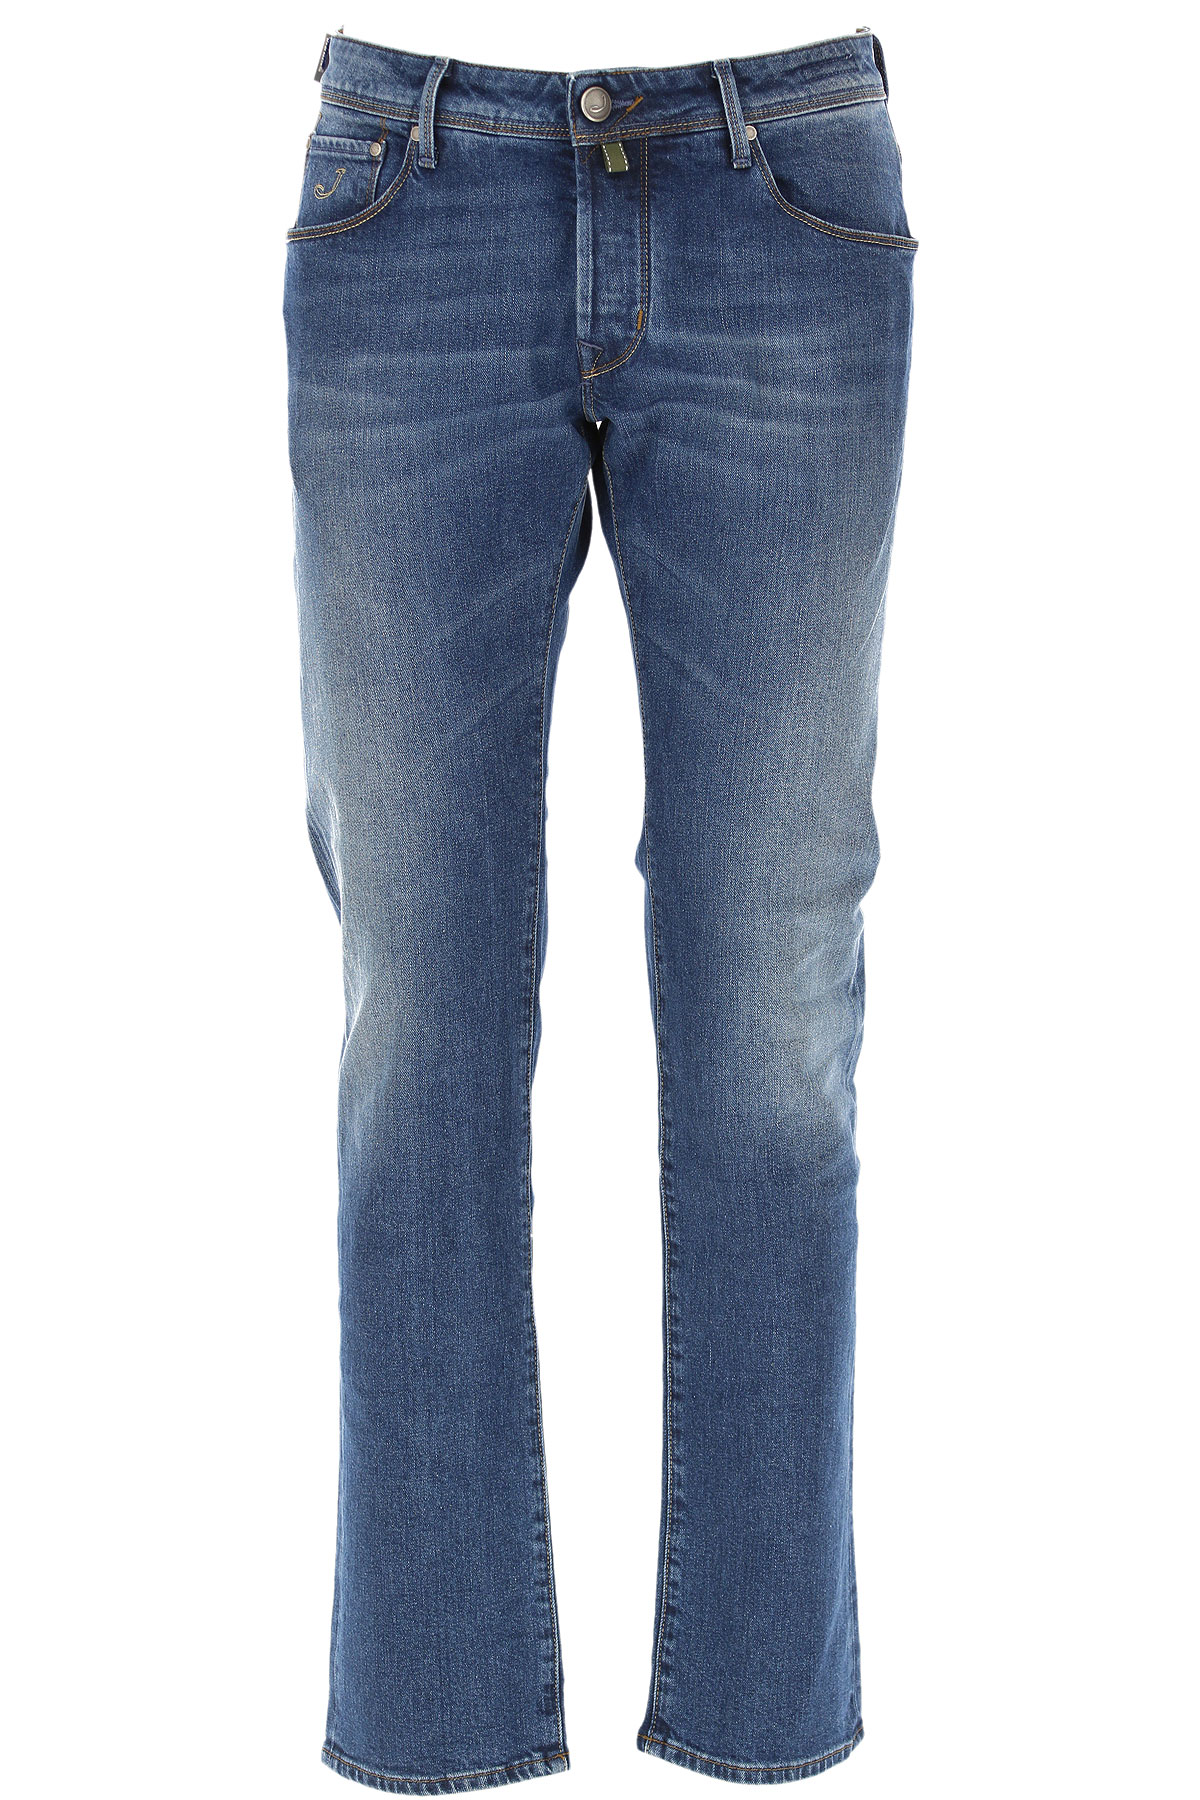 Jacob Cohen Jeans, Bluejeans, Denim Jeans für Herren Günstig im Sale, Denim- Blau, Baumwolle, 2017, 46 48 49 50 51 52